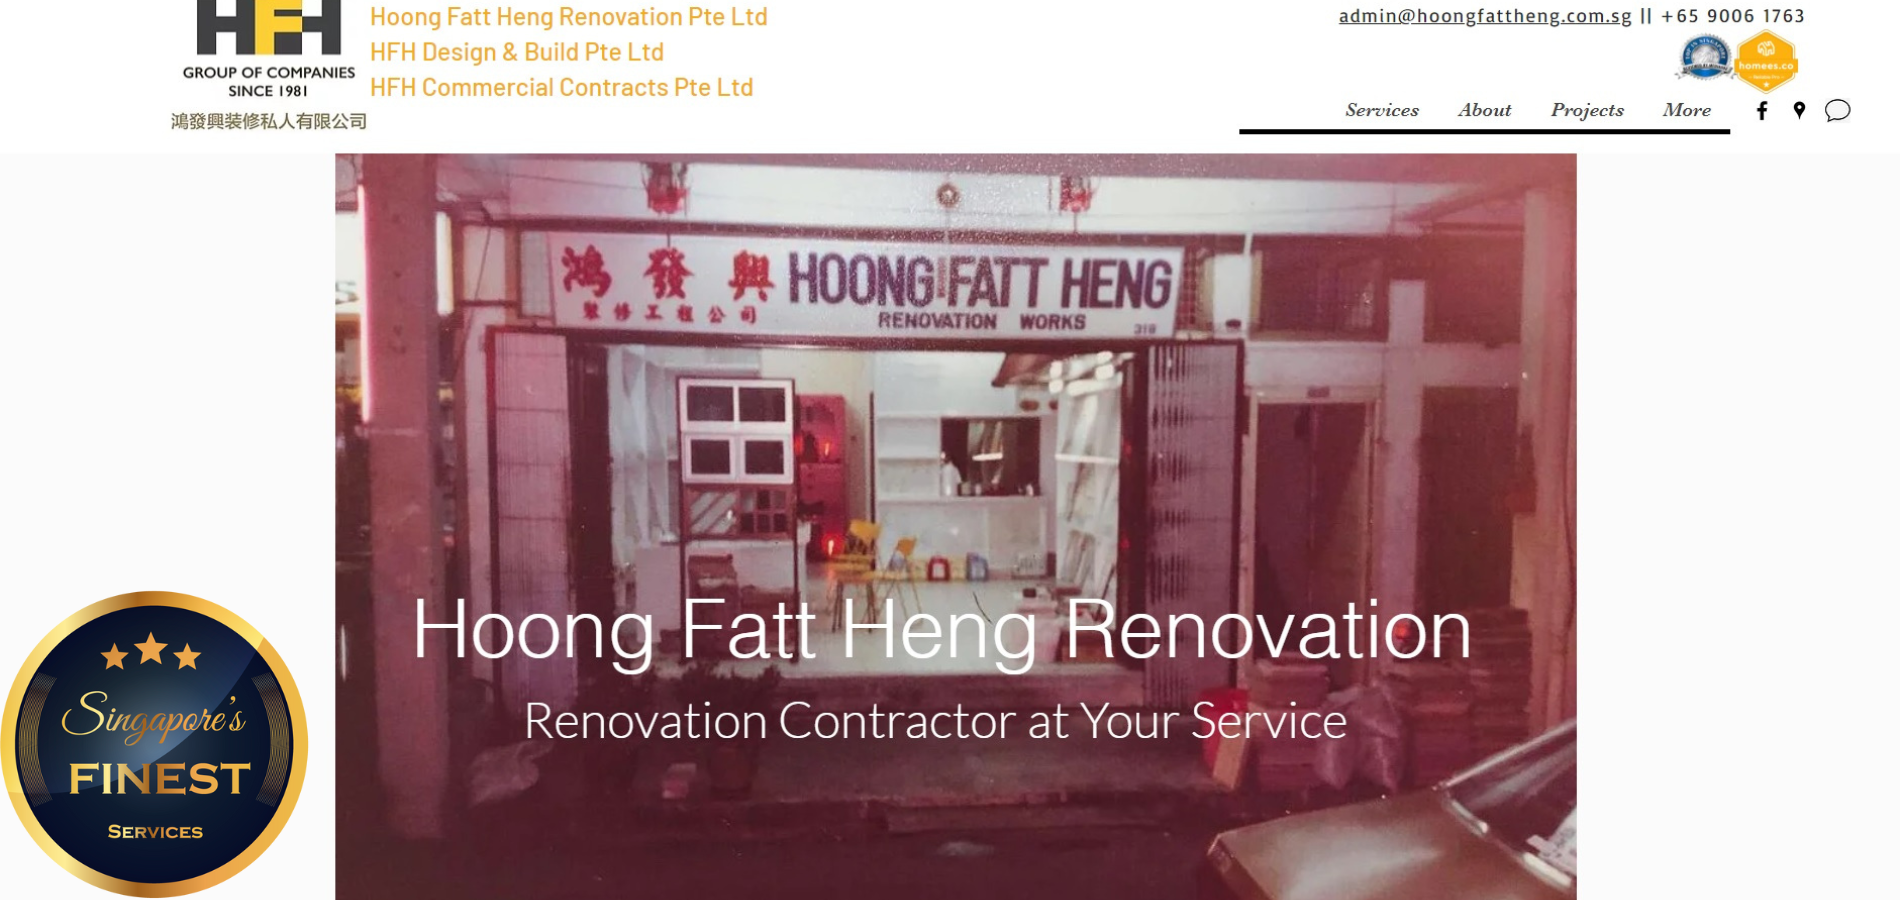 Hoong Fatt Heng Renovation Pte Ltd - Renovation Contractors Singapore